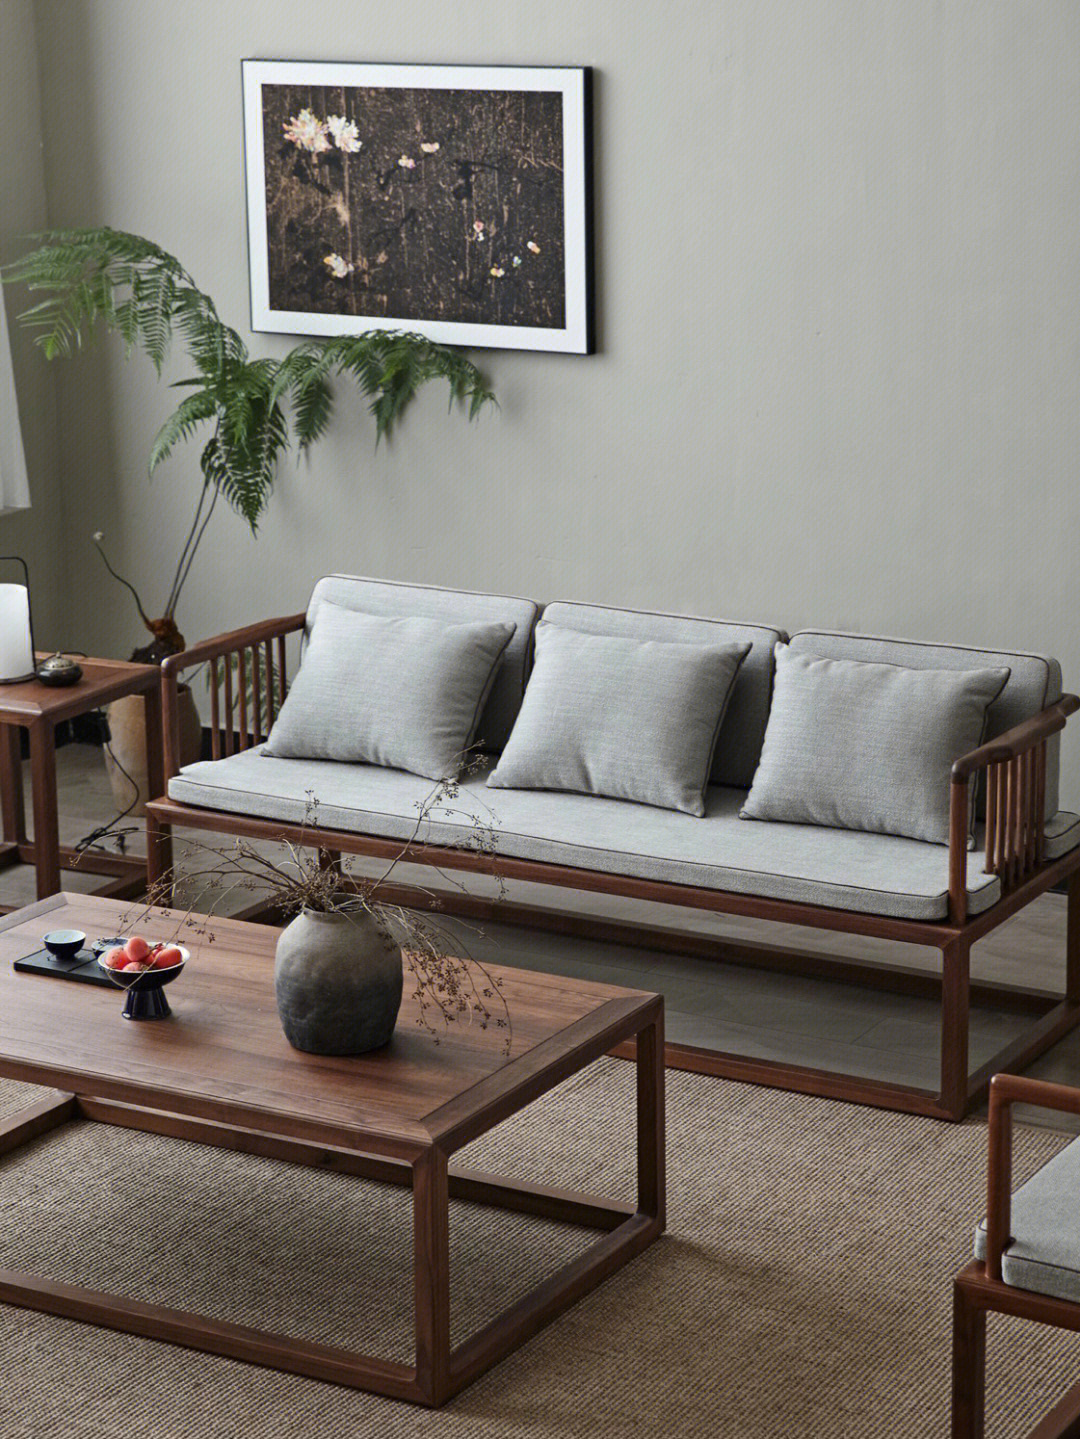 沙发,每个家庭都有的家具,新中式风格的沙发似乎越来越得到80,90后的